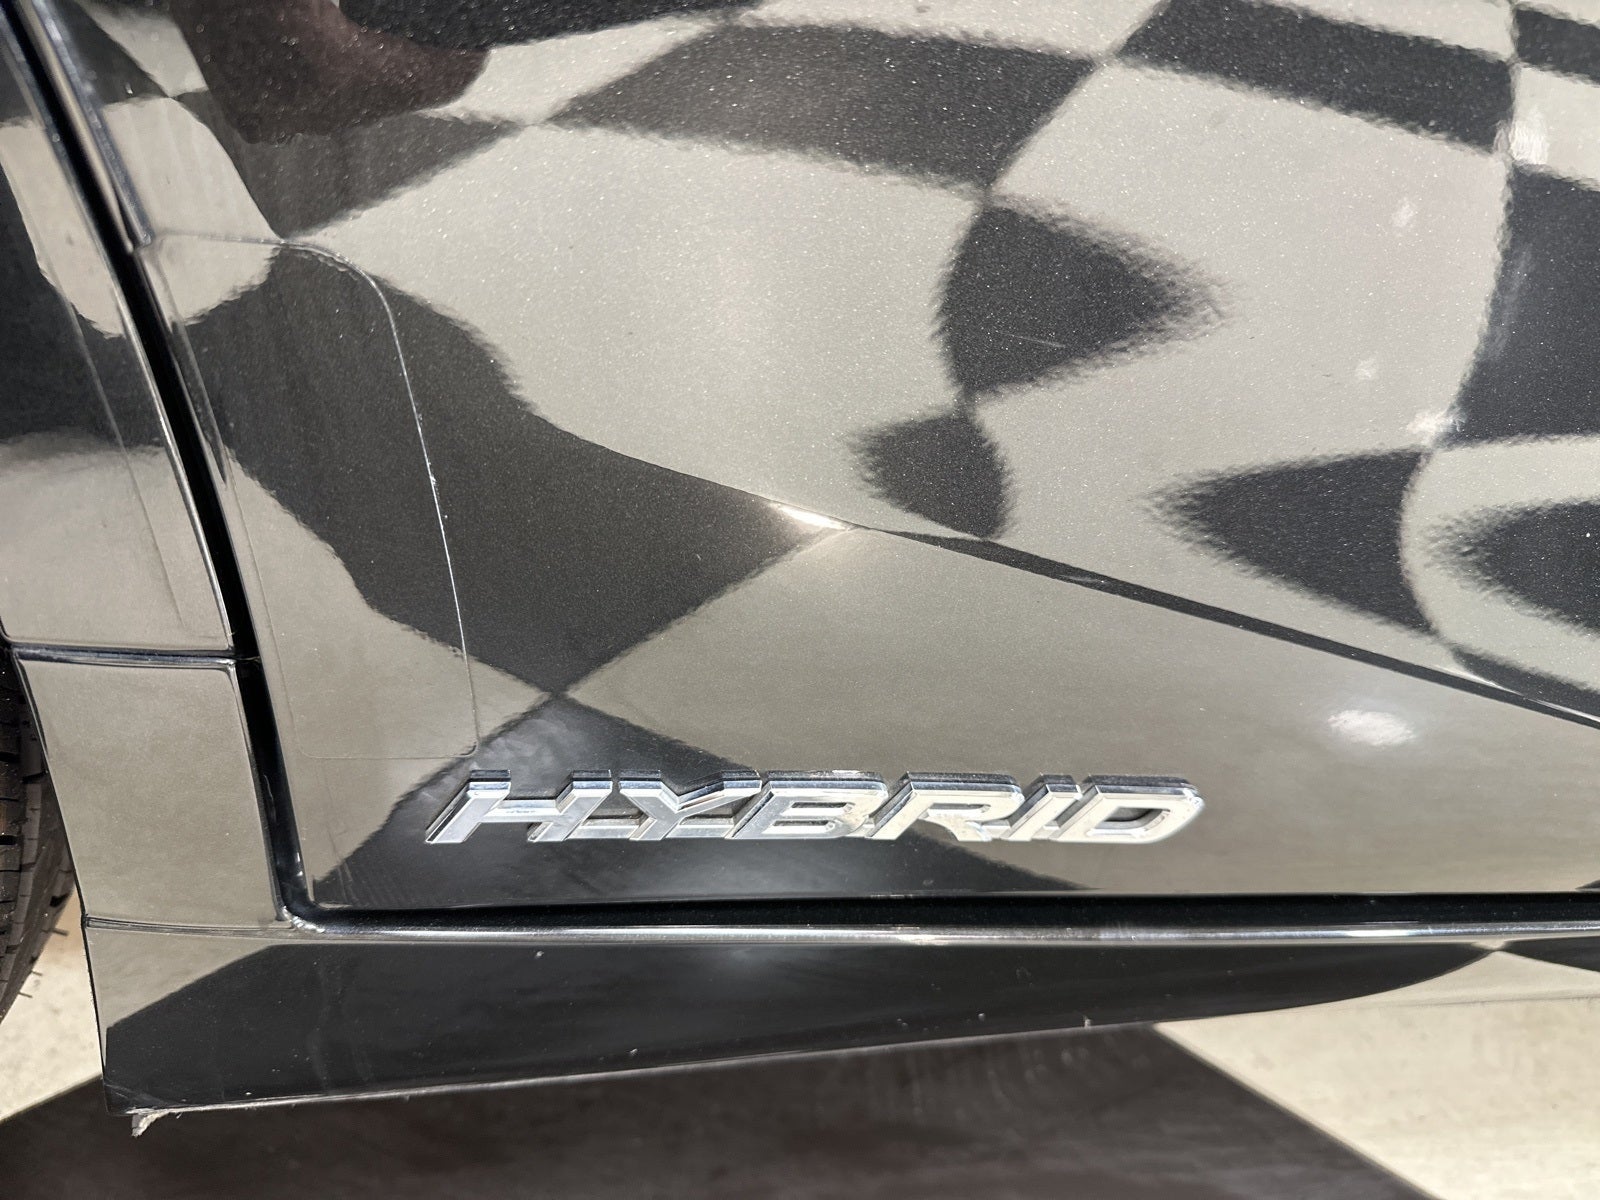 2020 Lexus ES 300h Luxury